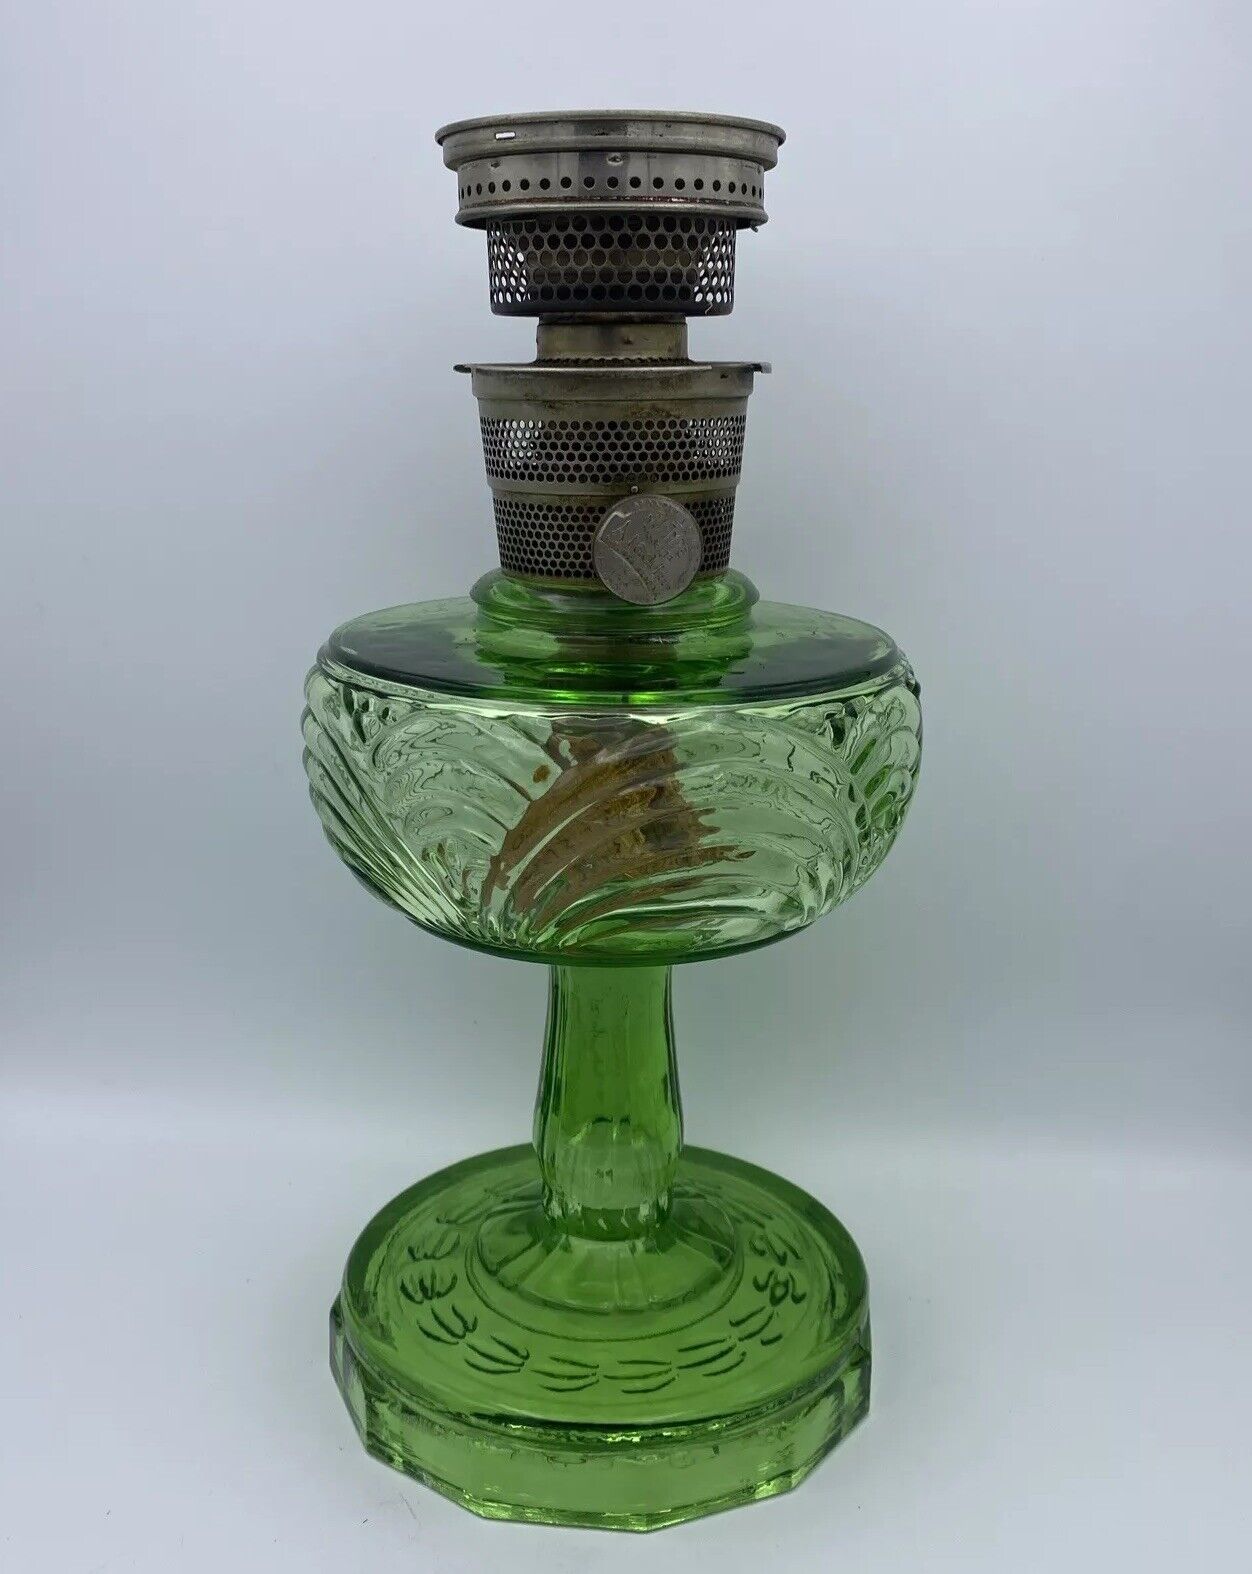 Vintage Aladdin Oil Lamp Green Mantle Lamp Co NU Type Model B Burner Made In USA